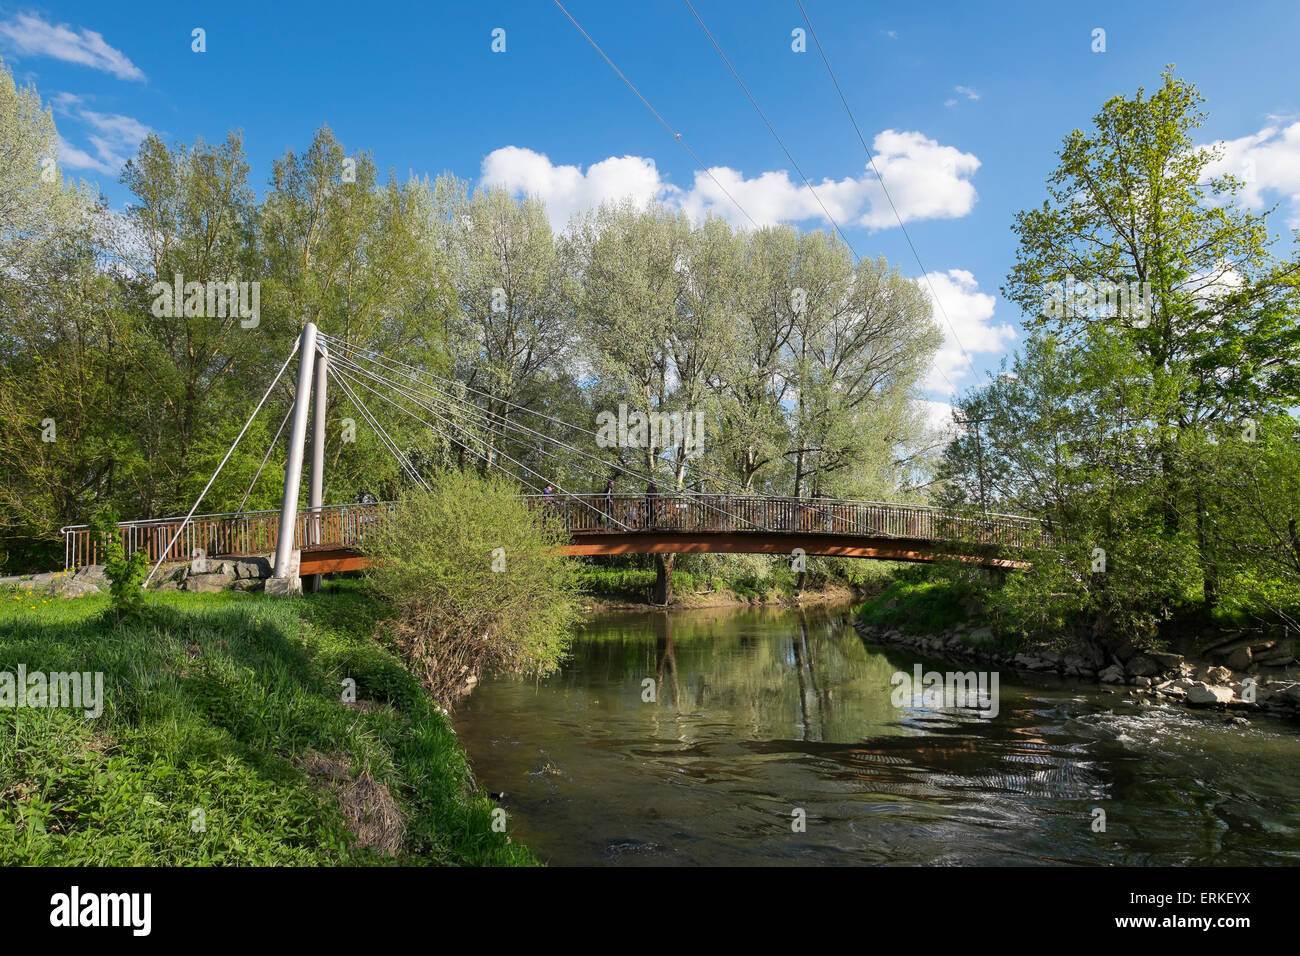 Bridge across Main confluence or Main origin, Kulmbach, Upper Franconia, Franconia, Bavaria, Germany Stock Photo